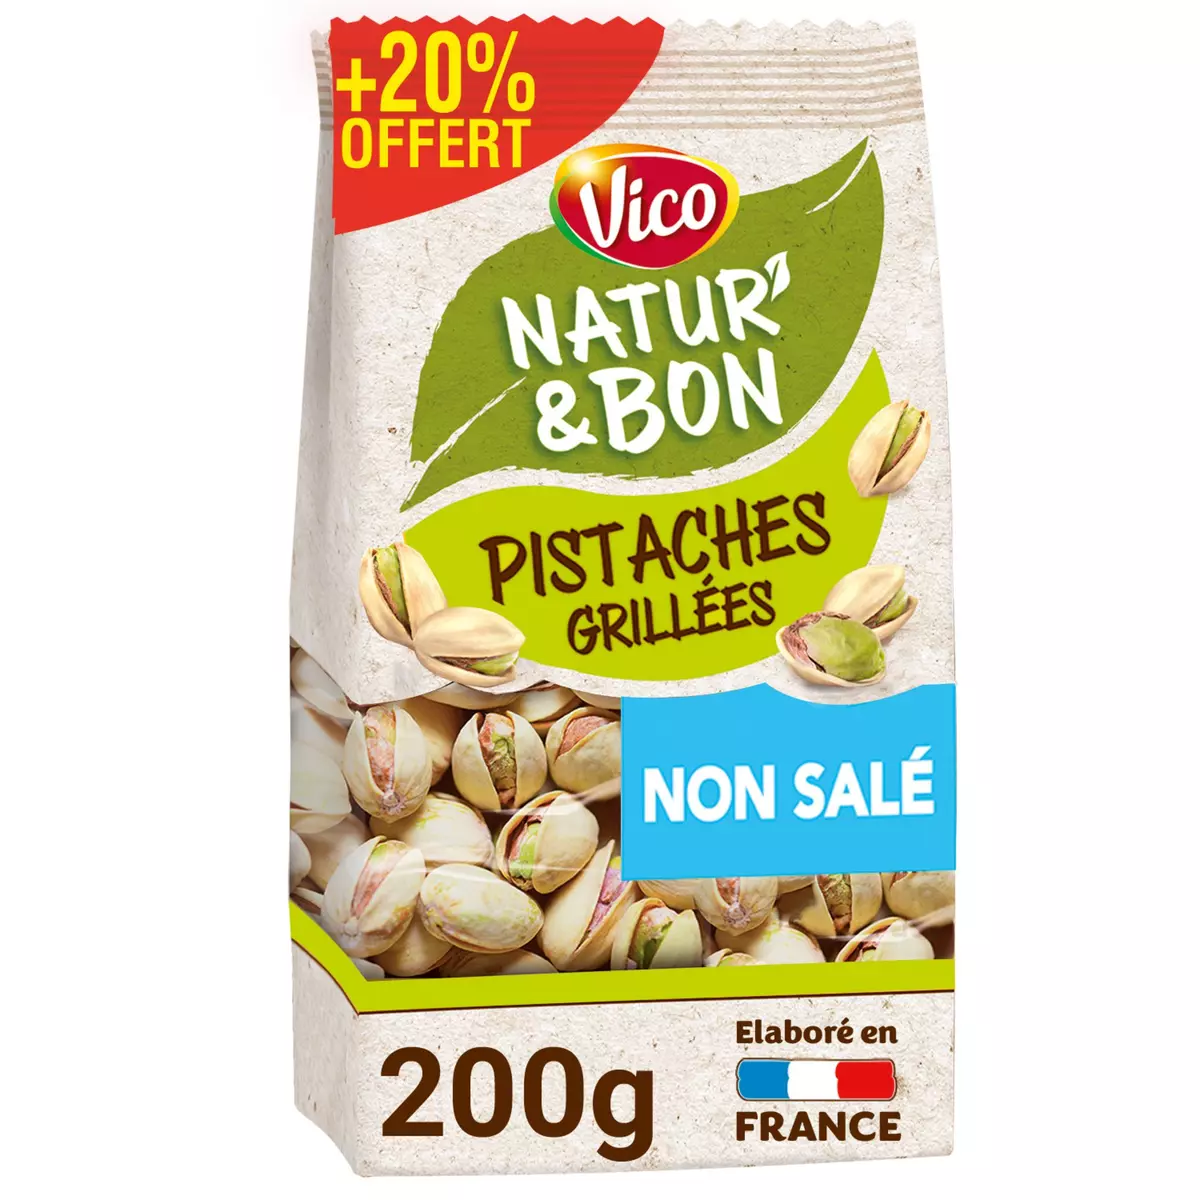 VICO Natur'& bon pistaches grillées non salé 200g+ 20% offert